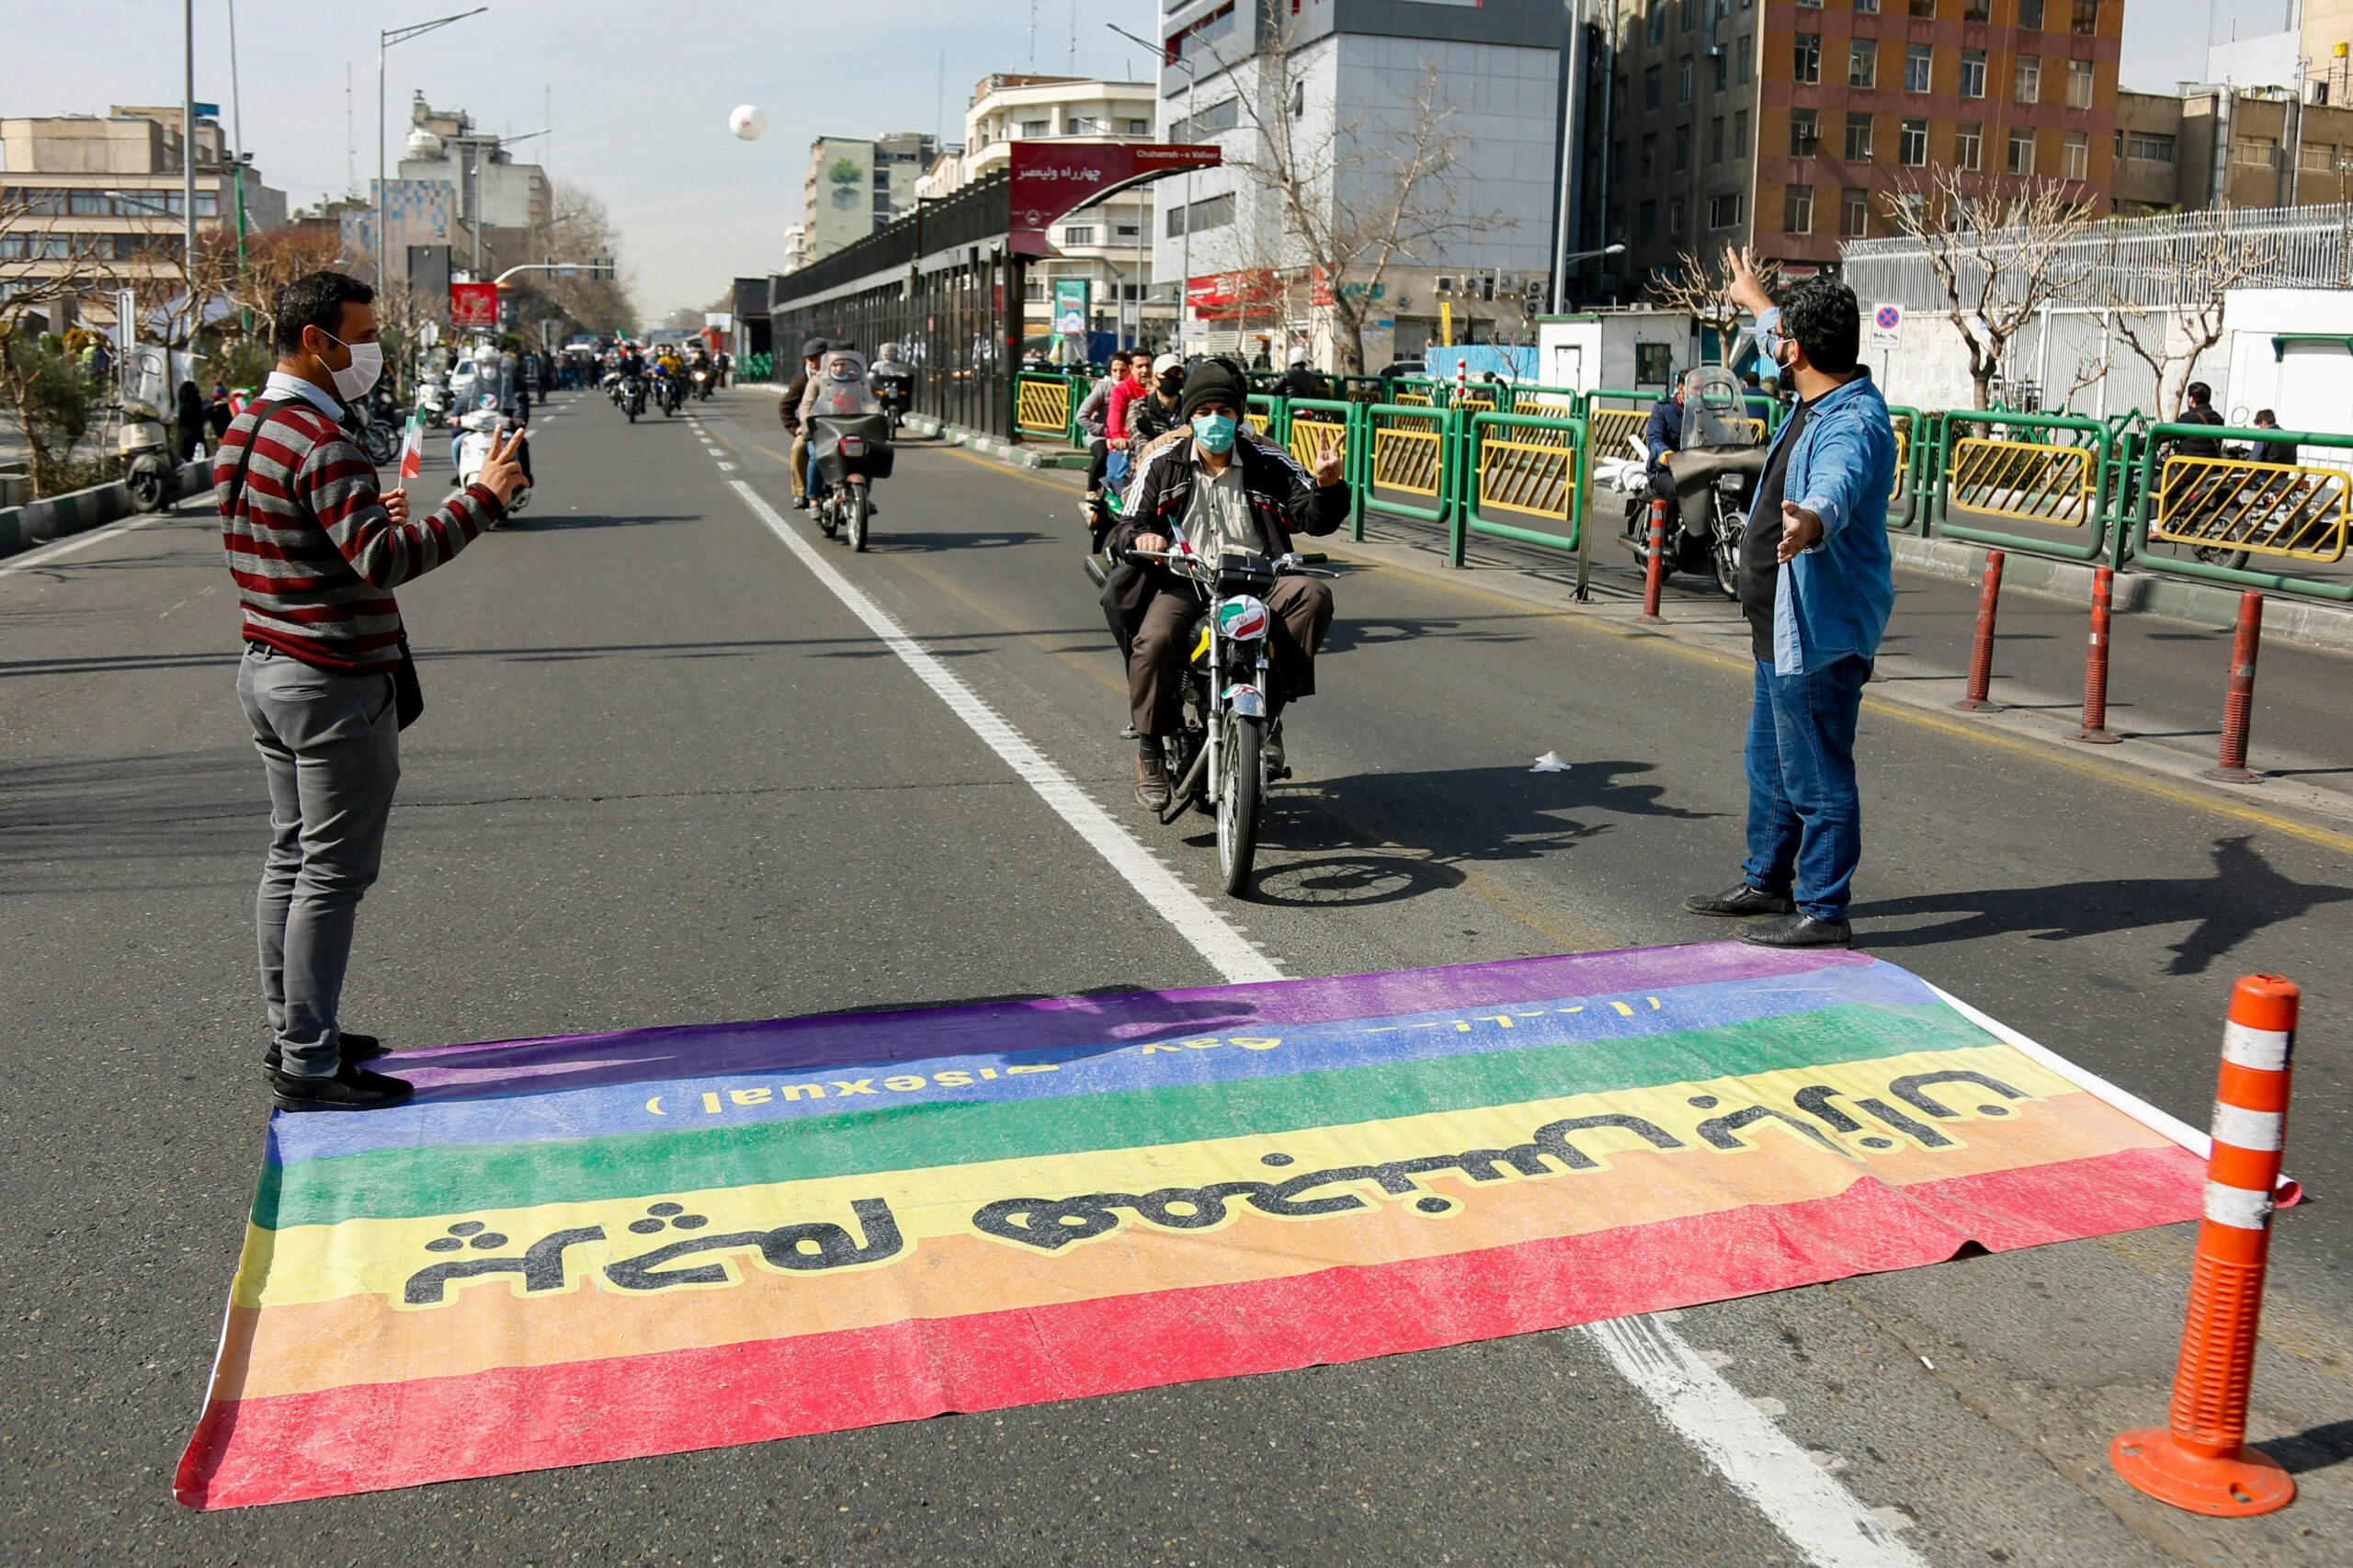 تصویر: در یک راهپیمایی در ایران مردم دعوت به عبور از پرچم رنگین‌کمانی می‌شوند درحالی‌که به فحش بر روی پرچم نوشته شده «پرچم همجنس‌بازان»